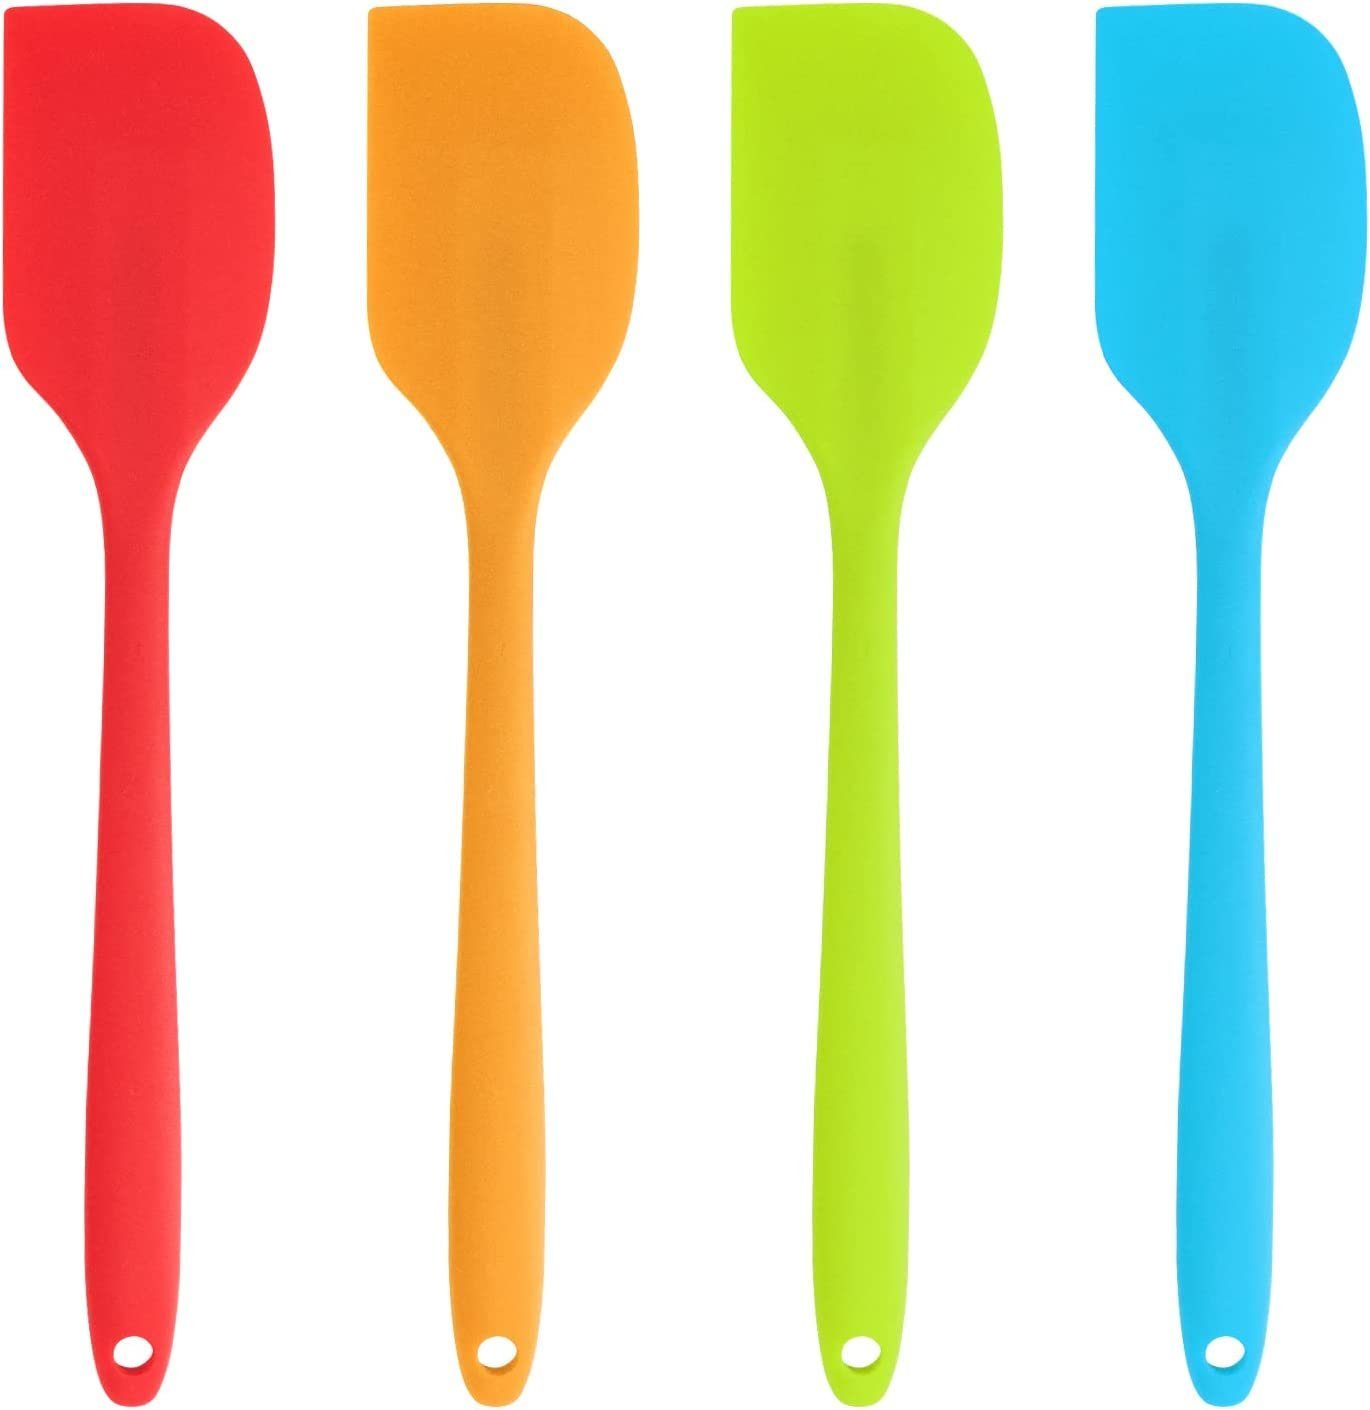 JOEJI’S KITCHEN Kochen, Farben, Küchenschaufel Teigschaber, Set in in Orange/Blau/Grün/Rot 4 Backen Silikonspateln Silikon mit großer zum verschiedenen Antihaft-Silikonspatel zum